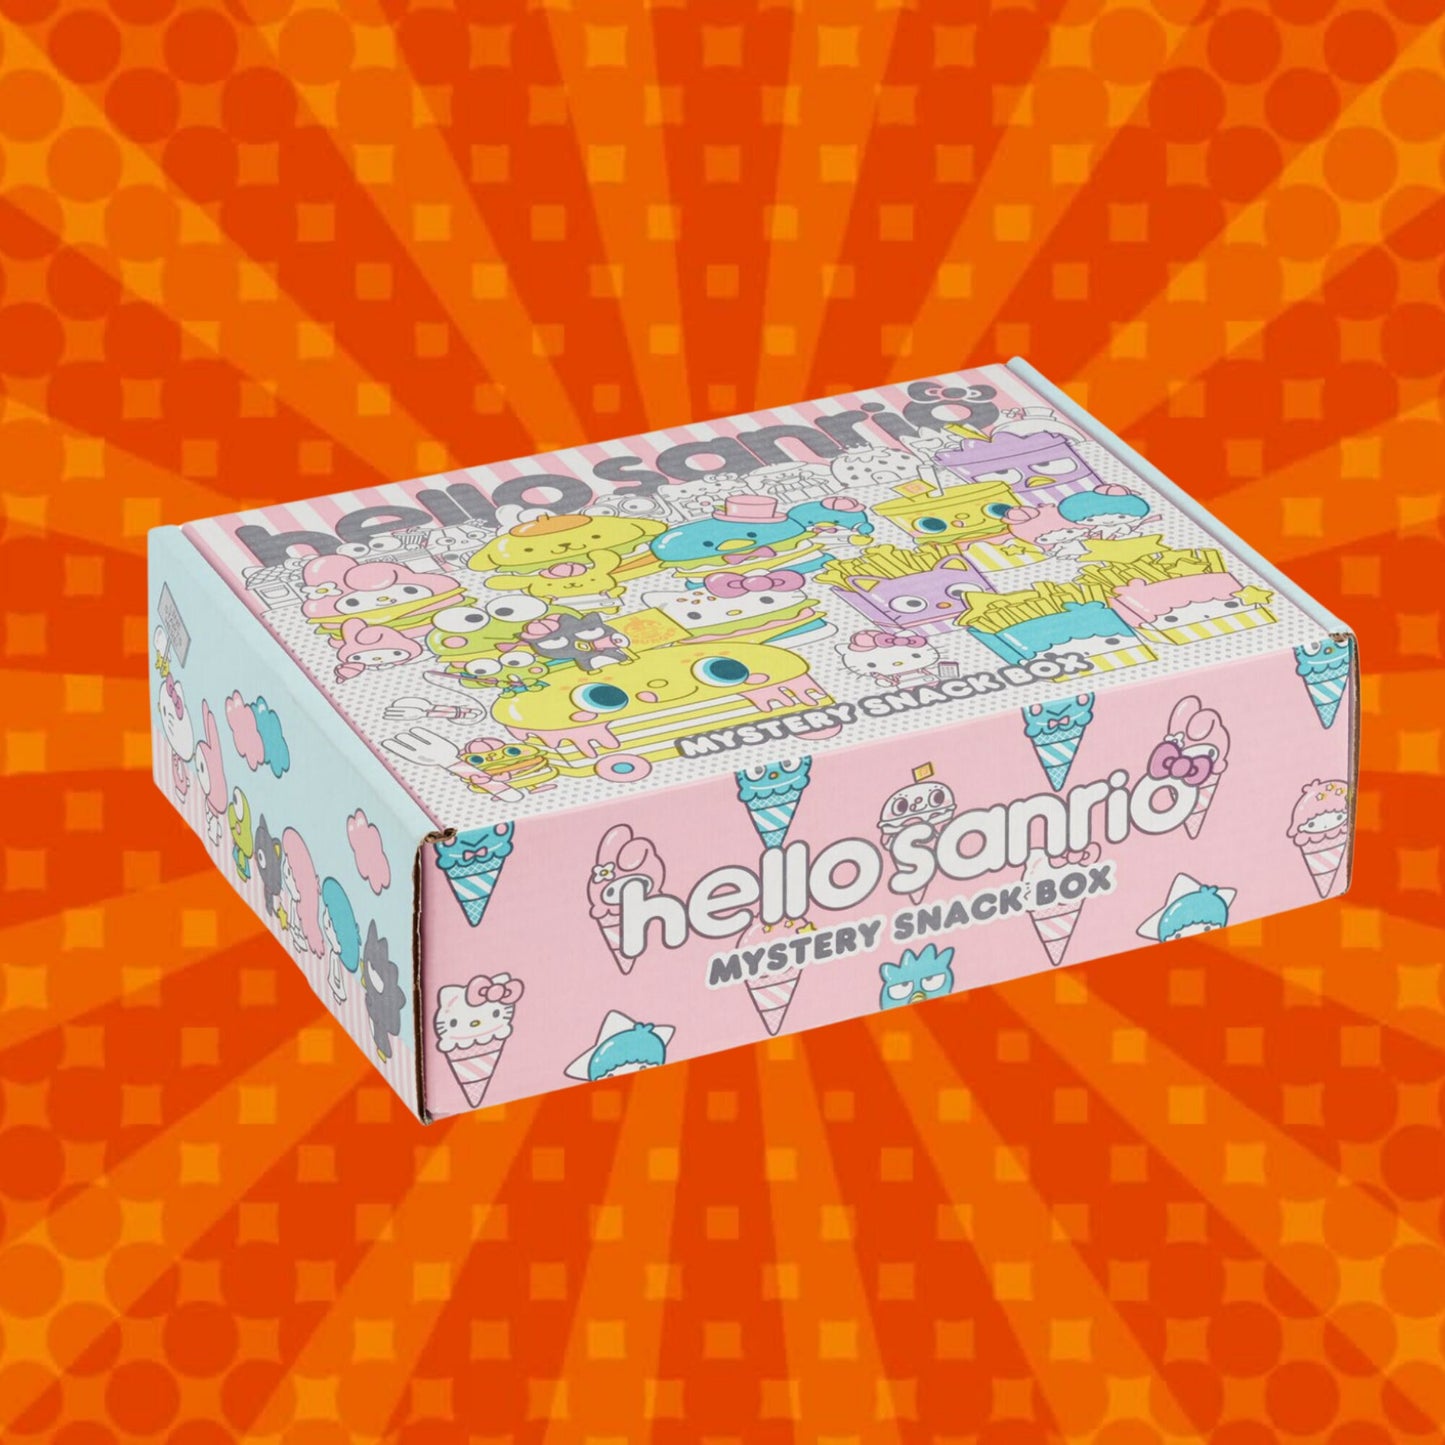 Hello Kitty Mystery Snack Box - Closed Box